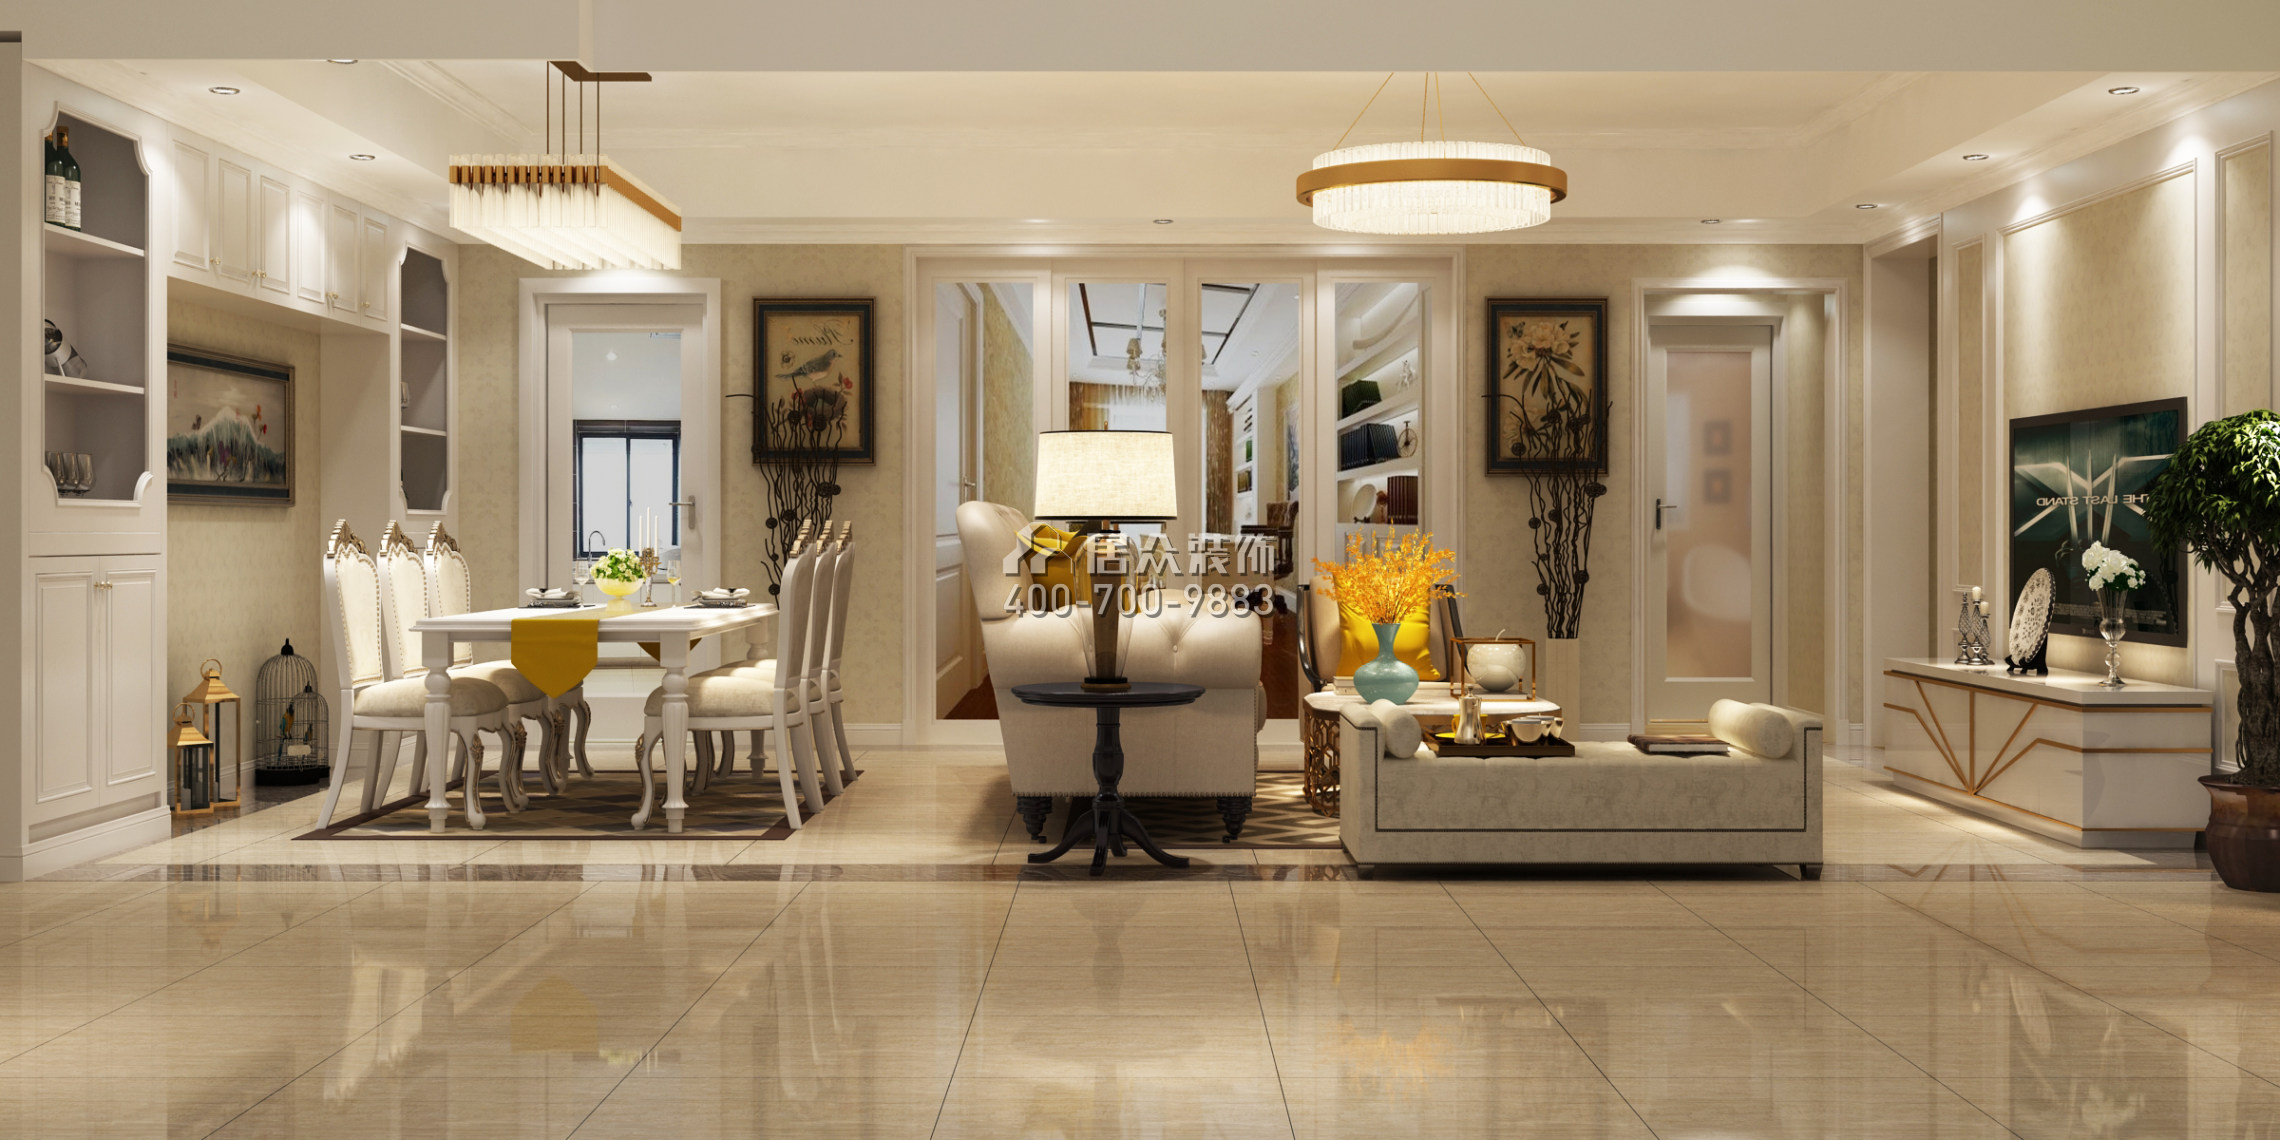 招商卡达凯斯140平方米欧式风格平层户型客厅装修效果图